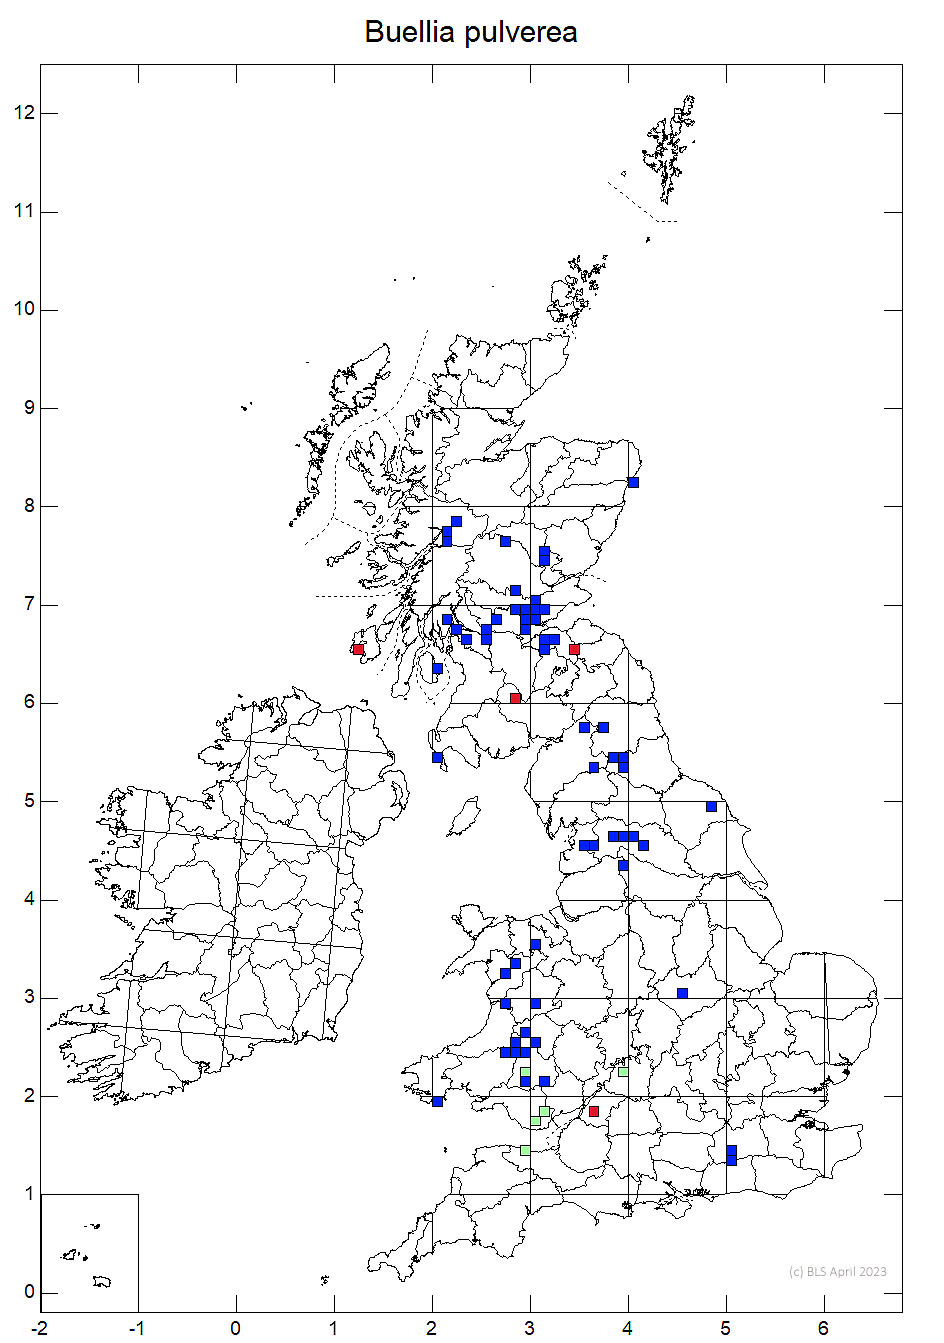 Buellia pulverea 10km sq distribution map